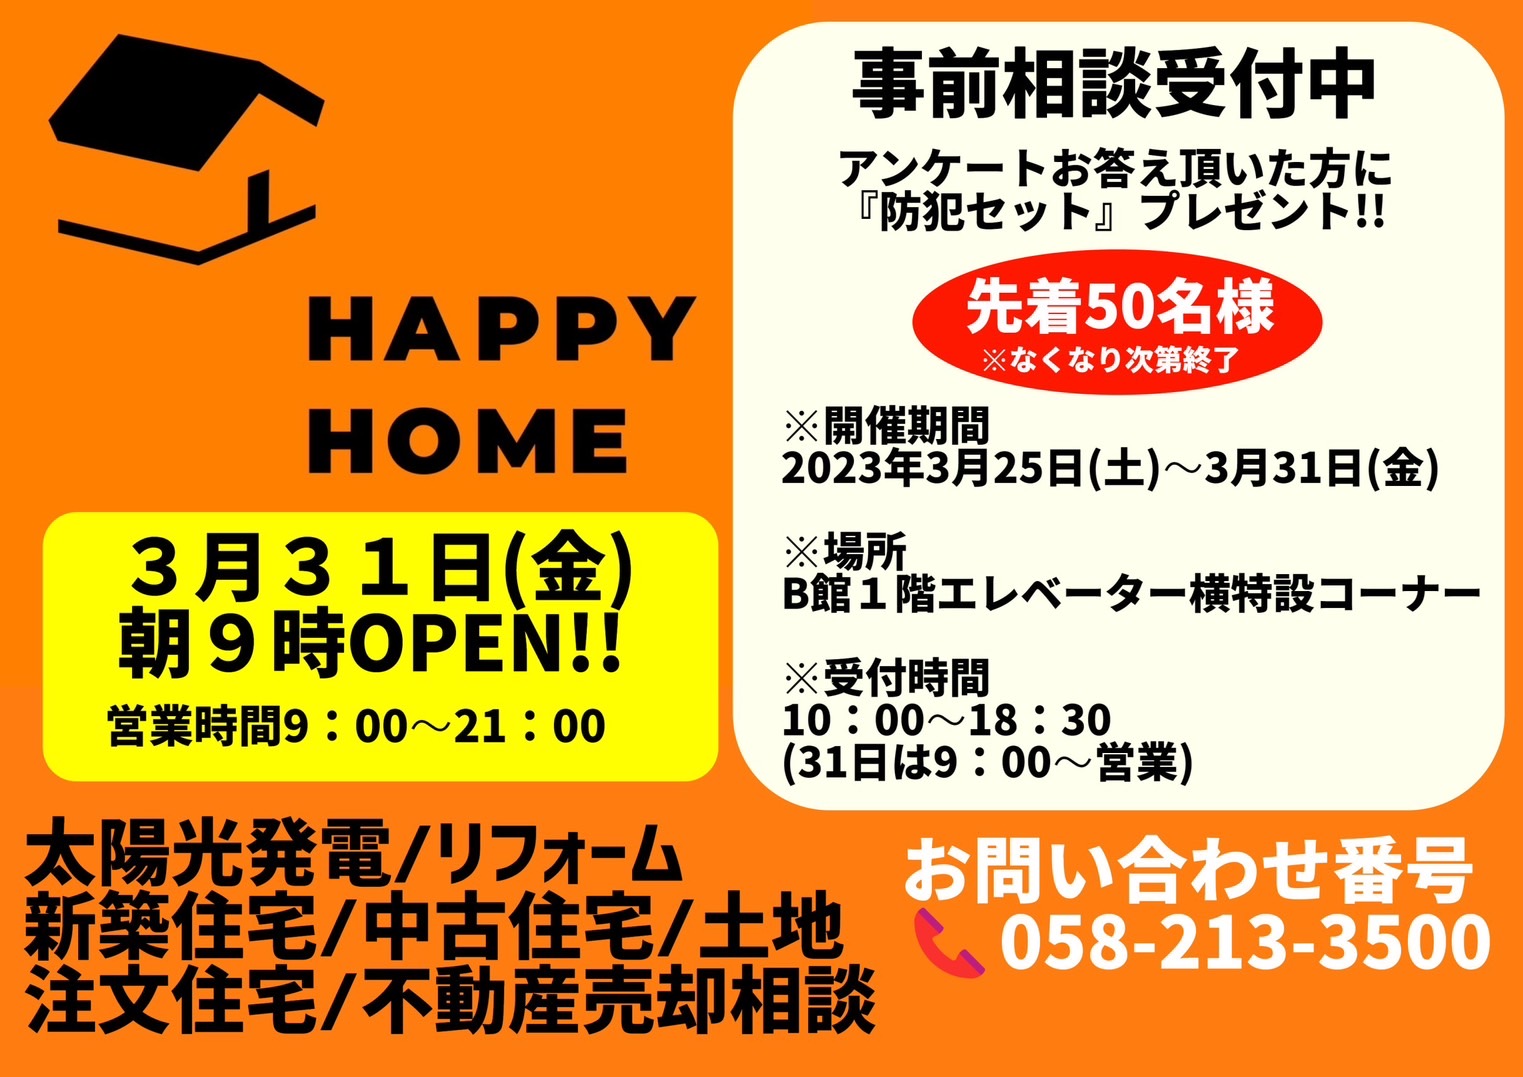 【HAPPY HOME】3/31(金) 朝9時OPEN!! 事前相談受付中 イメージ画像